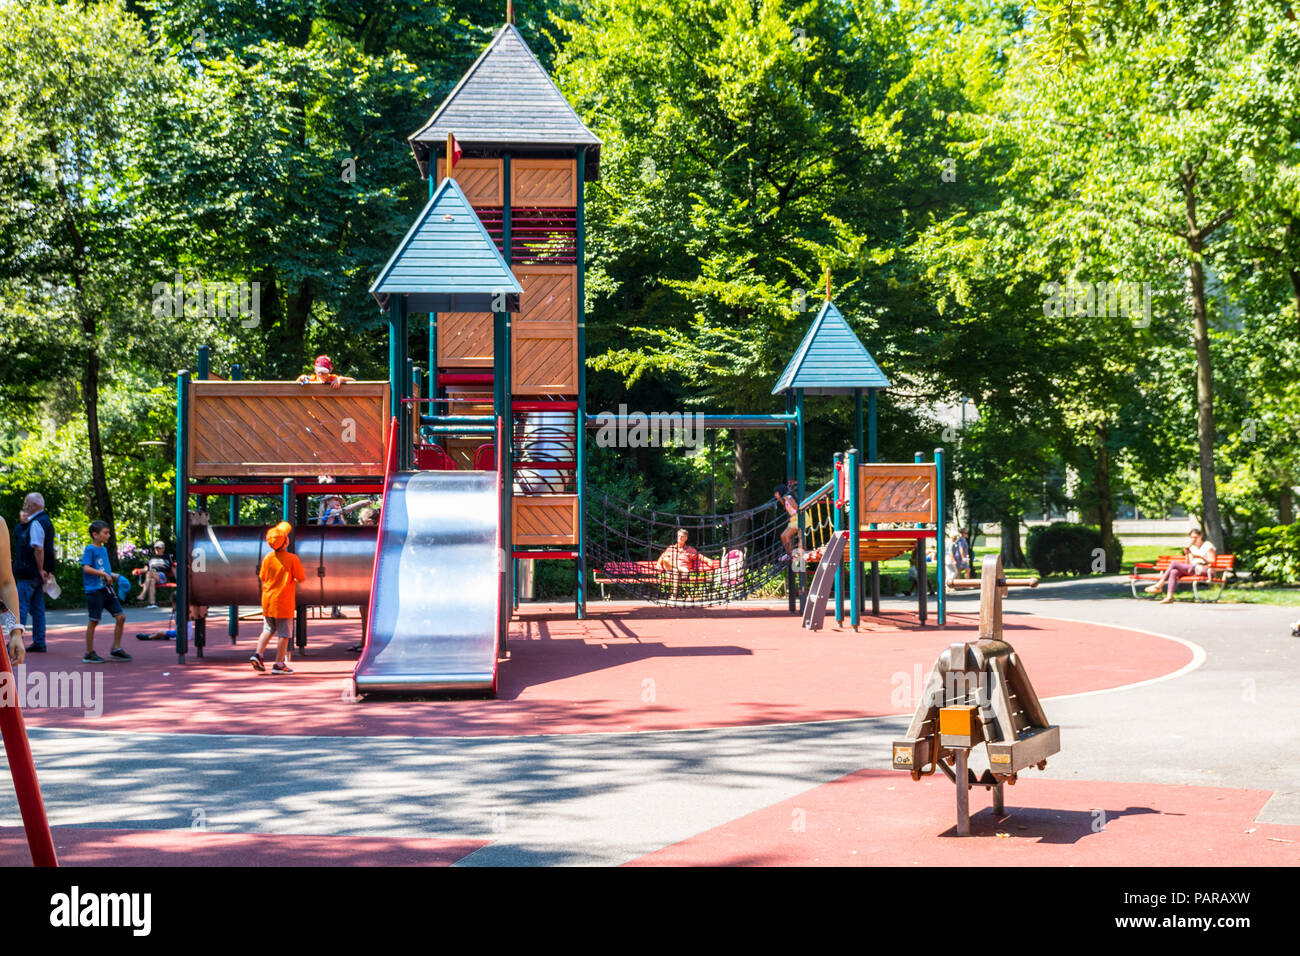 Large playground, big slide, Ciani Park, Lugano, Lake Lugano, Switzerland Stock Photo